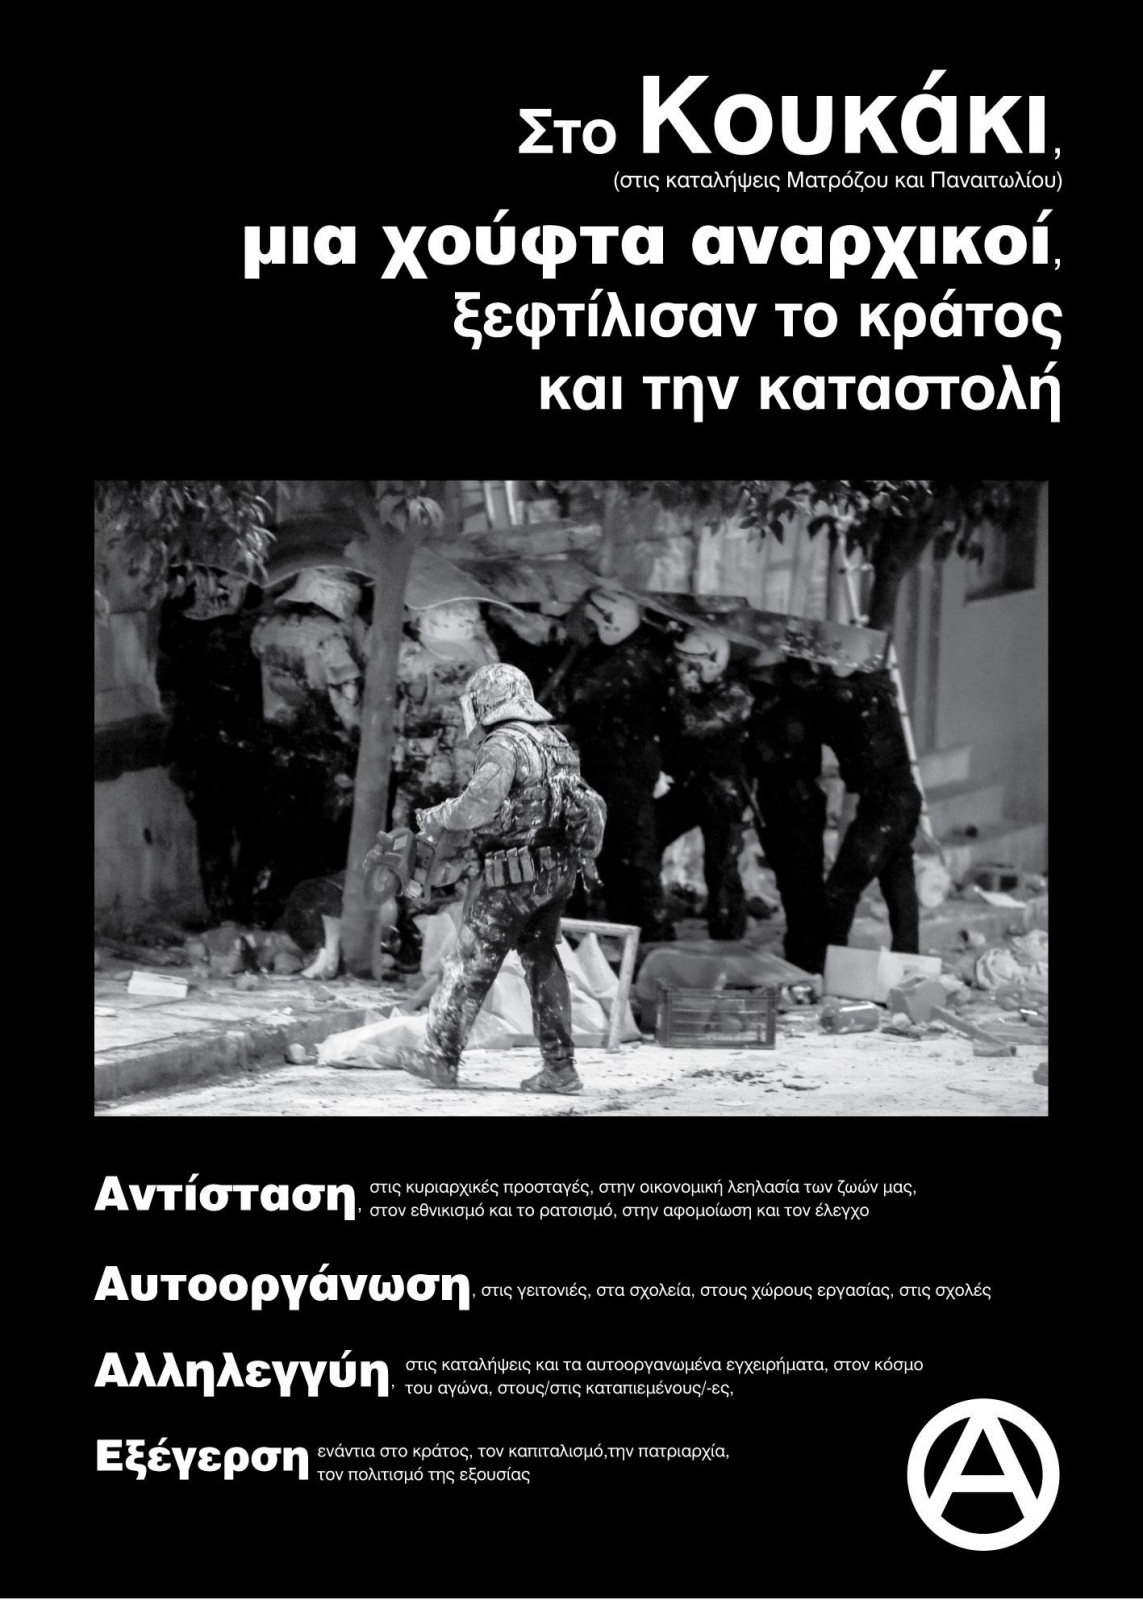 Αφίσα για τις ανακαταλήψεις στο Κουκάκι